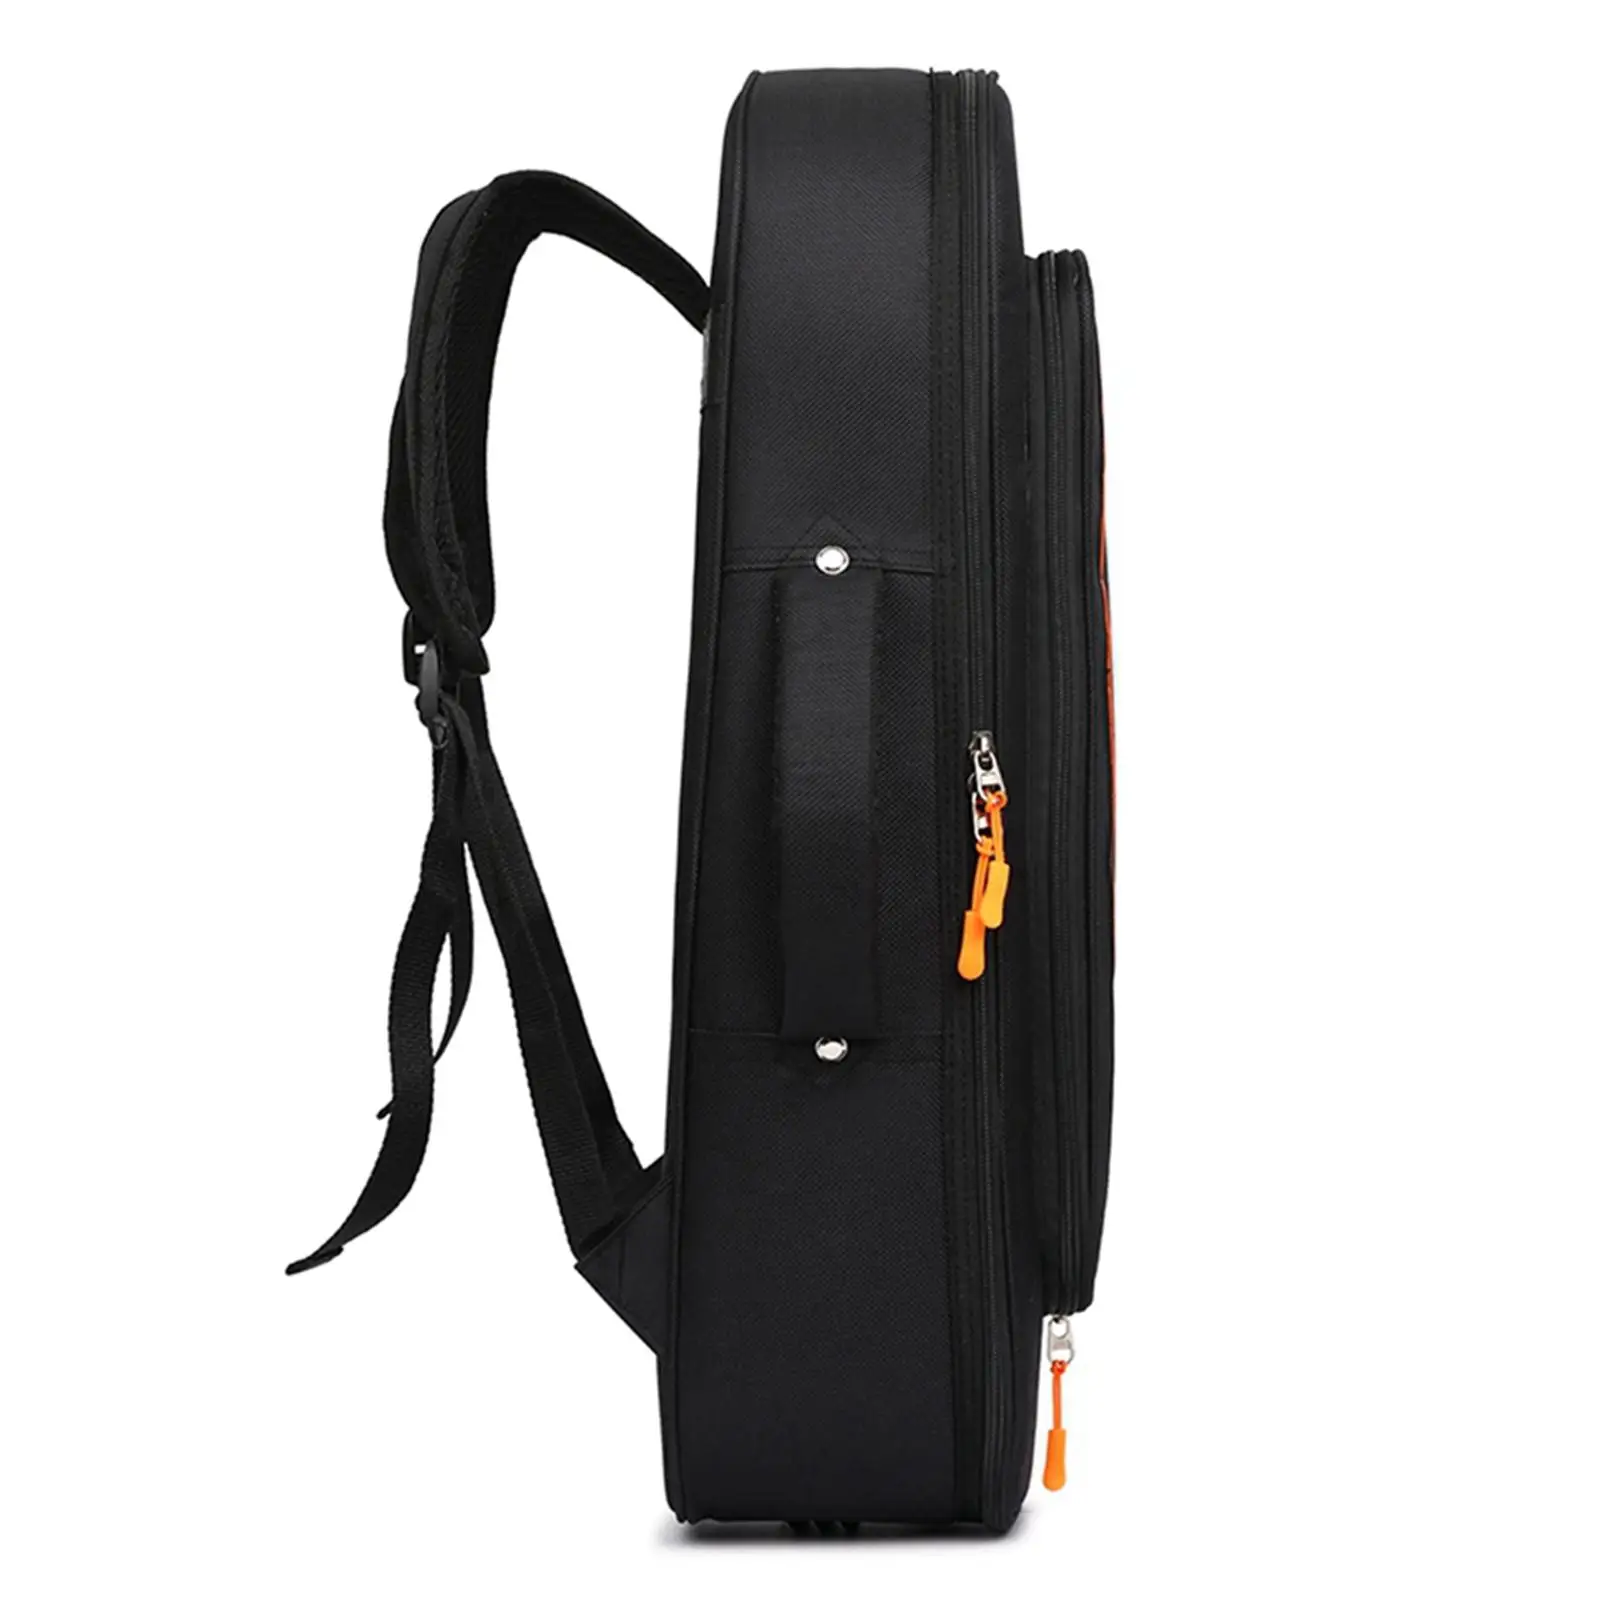 Небольшая сумка для музыкальных инструментов, портативный рюкзак для взрослых и детей на запчасти